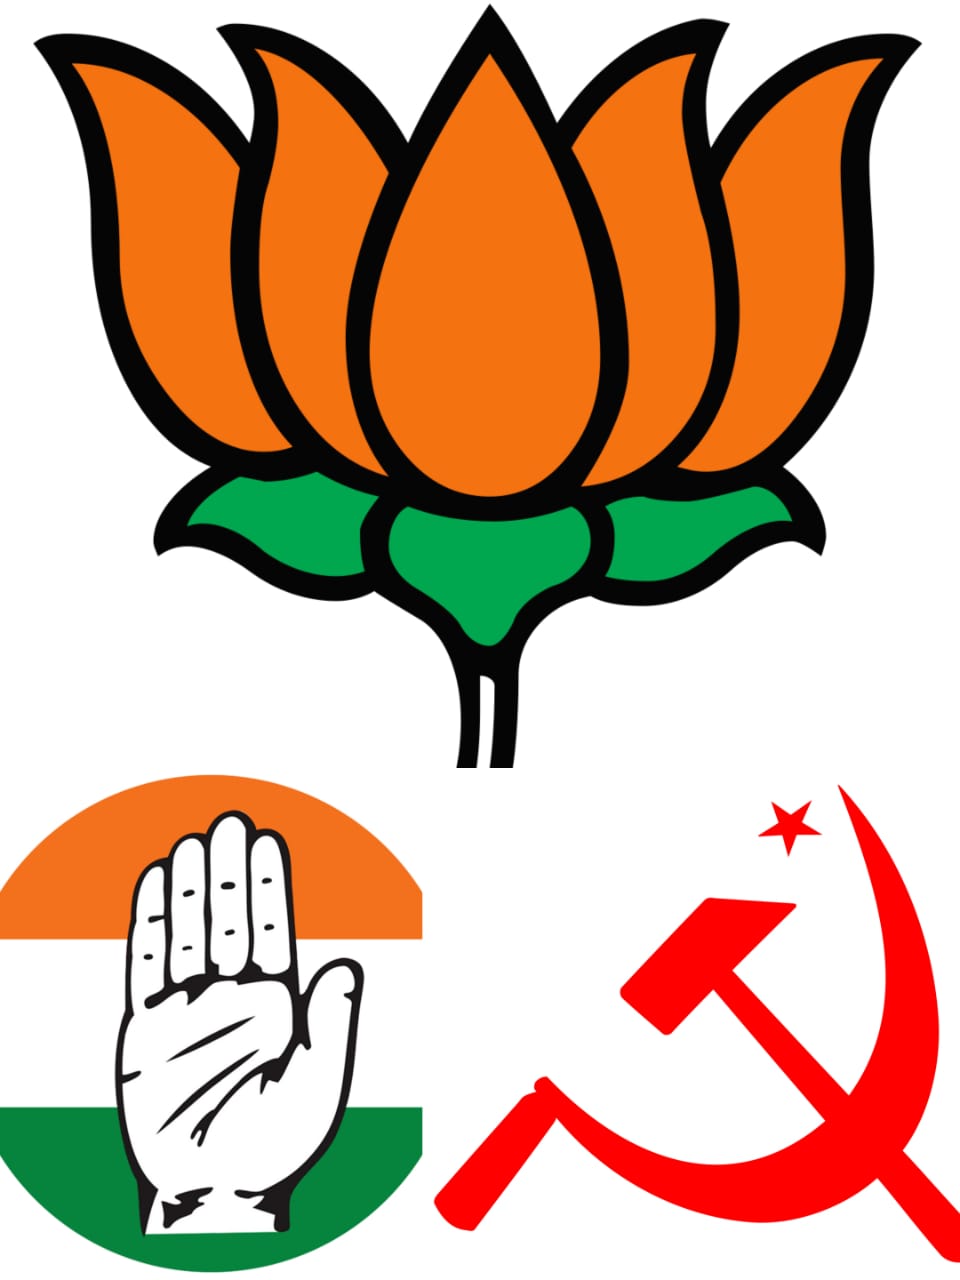 PRESSURE OF POWER : BJP के लिए बरसा कॉरपोरेट का चंदा, कांग्रेस फिसड्डी,कम्युनिस्ट पार्टियां जीरो, क्योंकि..